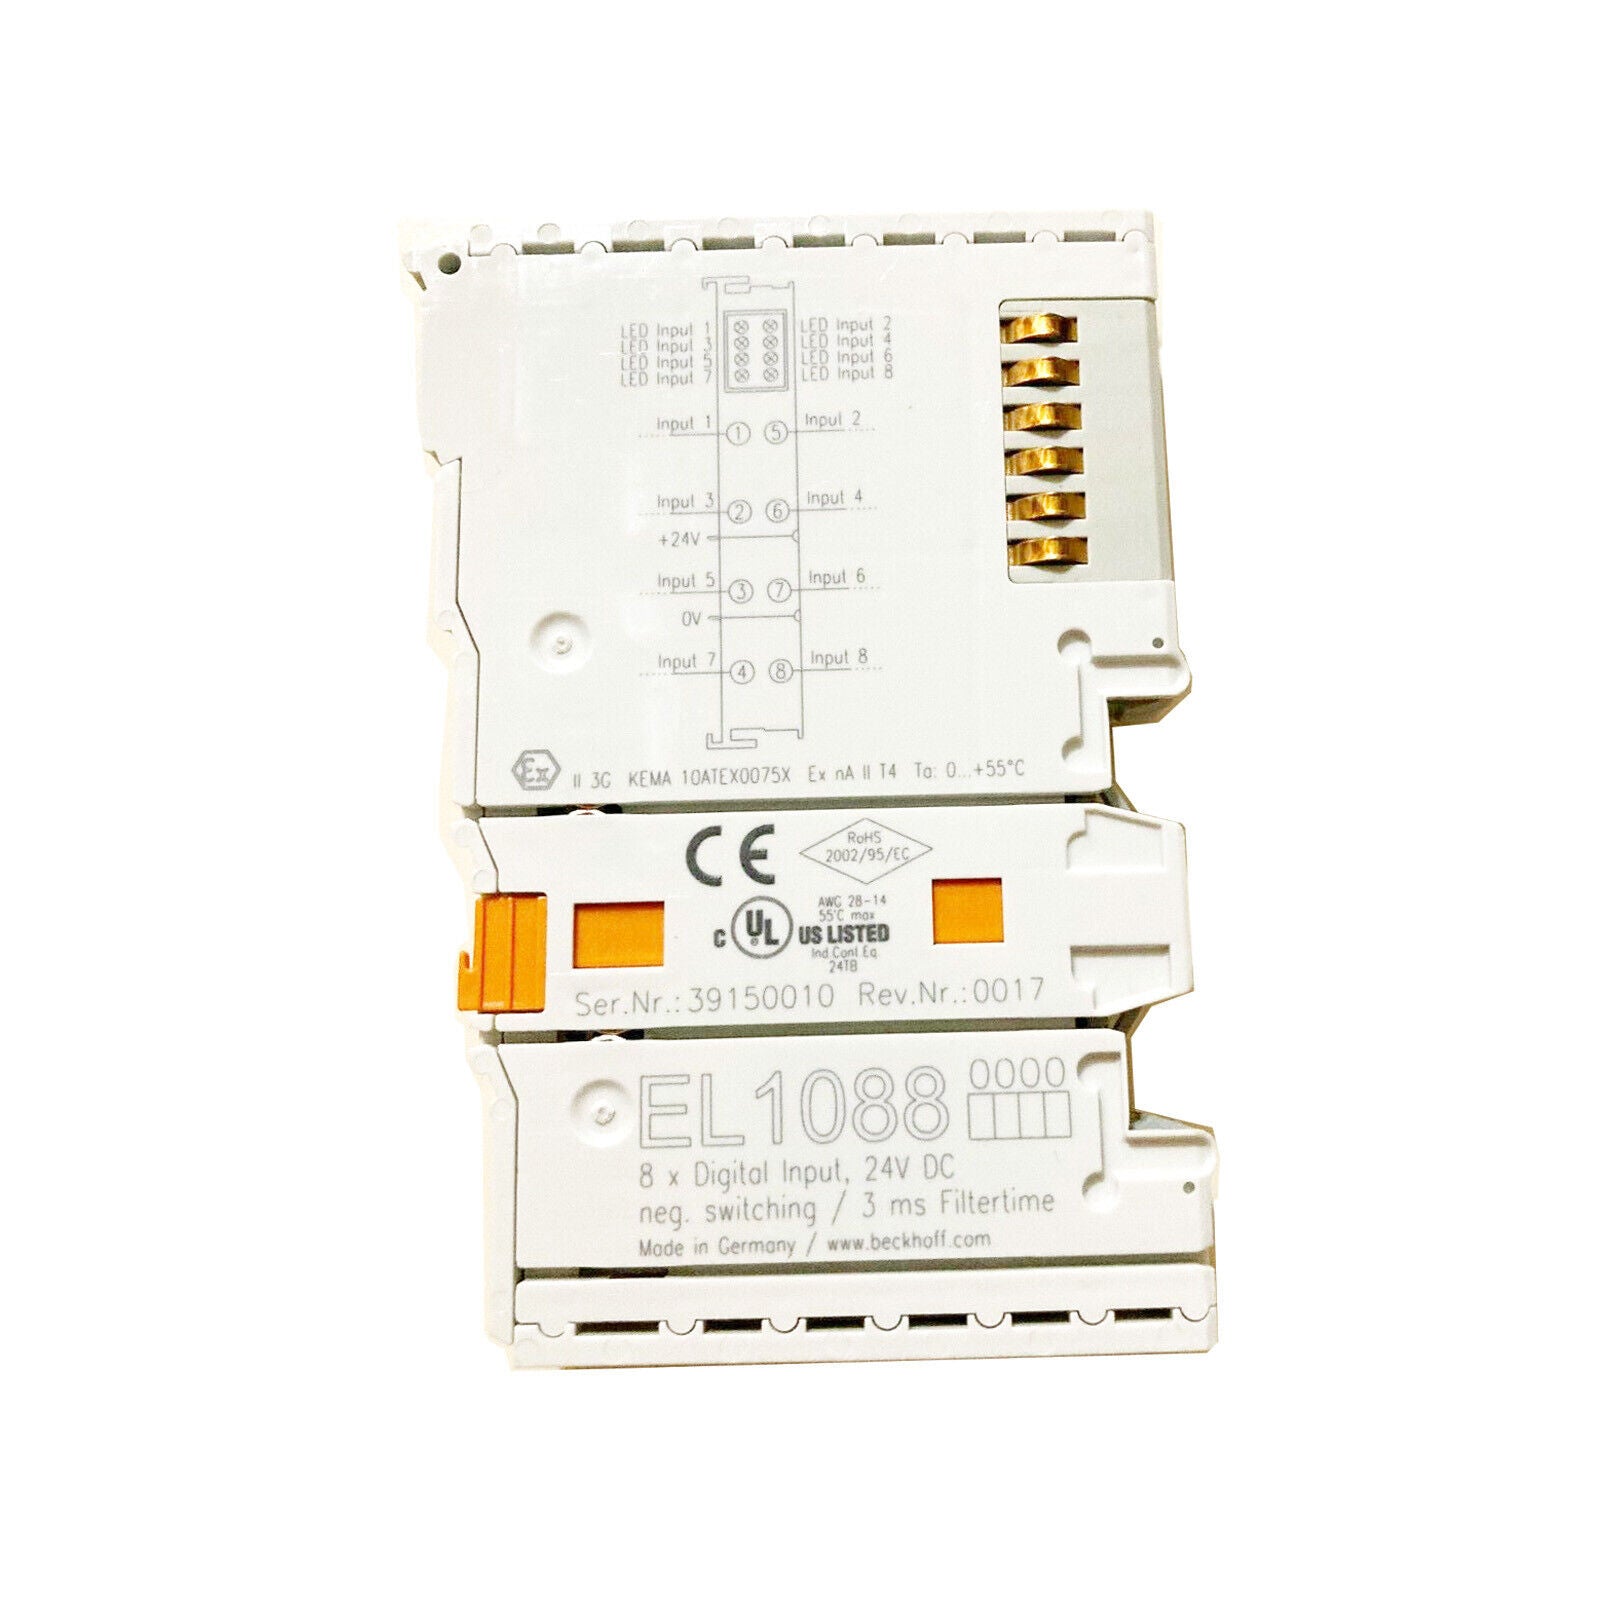 1 PCS   Beckhoff EL1088 PLC Module EL 1088 In Box